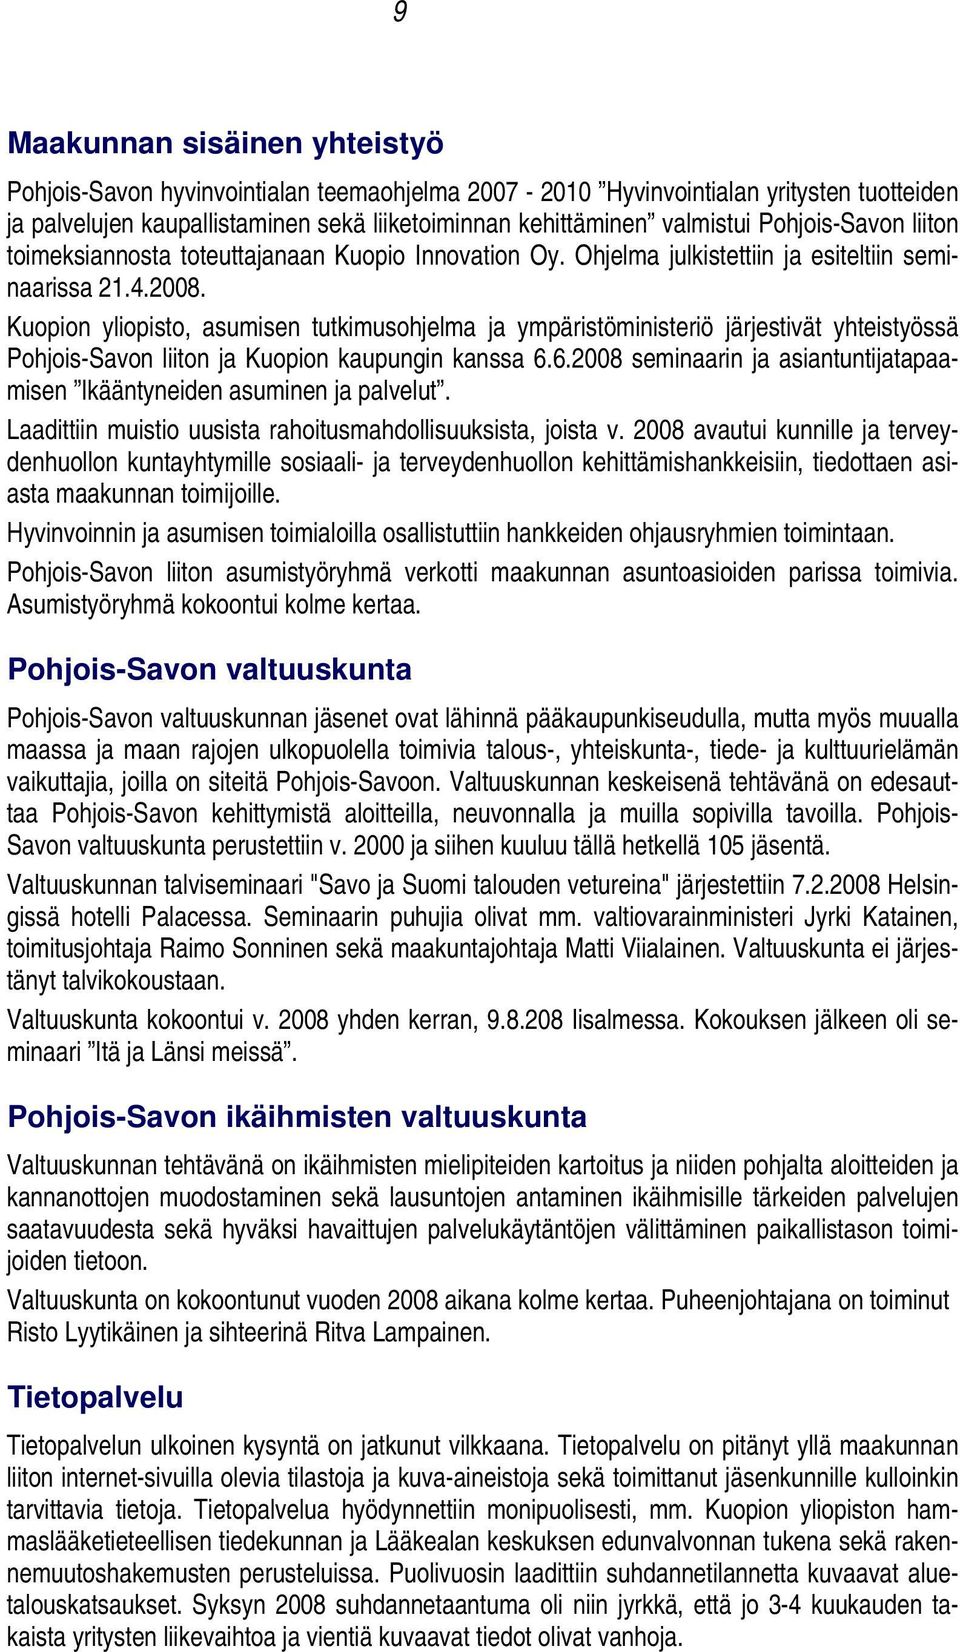 Kuopion yliopisto, asumisen tutkimusohjelma ja ympäristöministeriö järjestivät yhteistyössä Pohjois-Savon liiton ja Kuopion kaupungin kanssa 6.